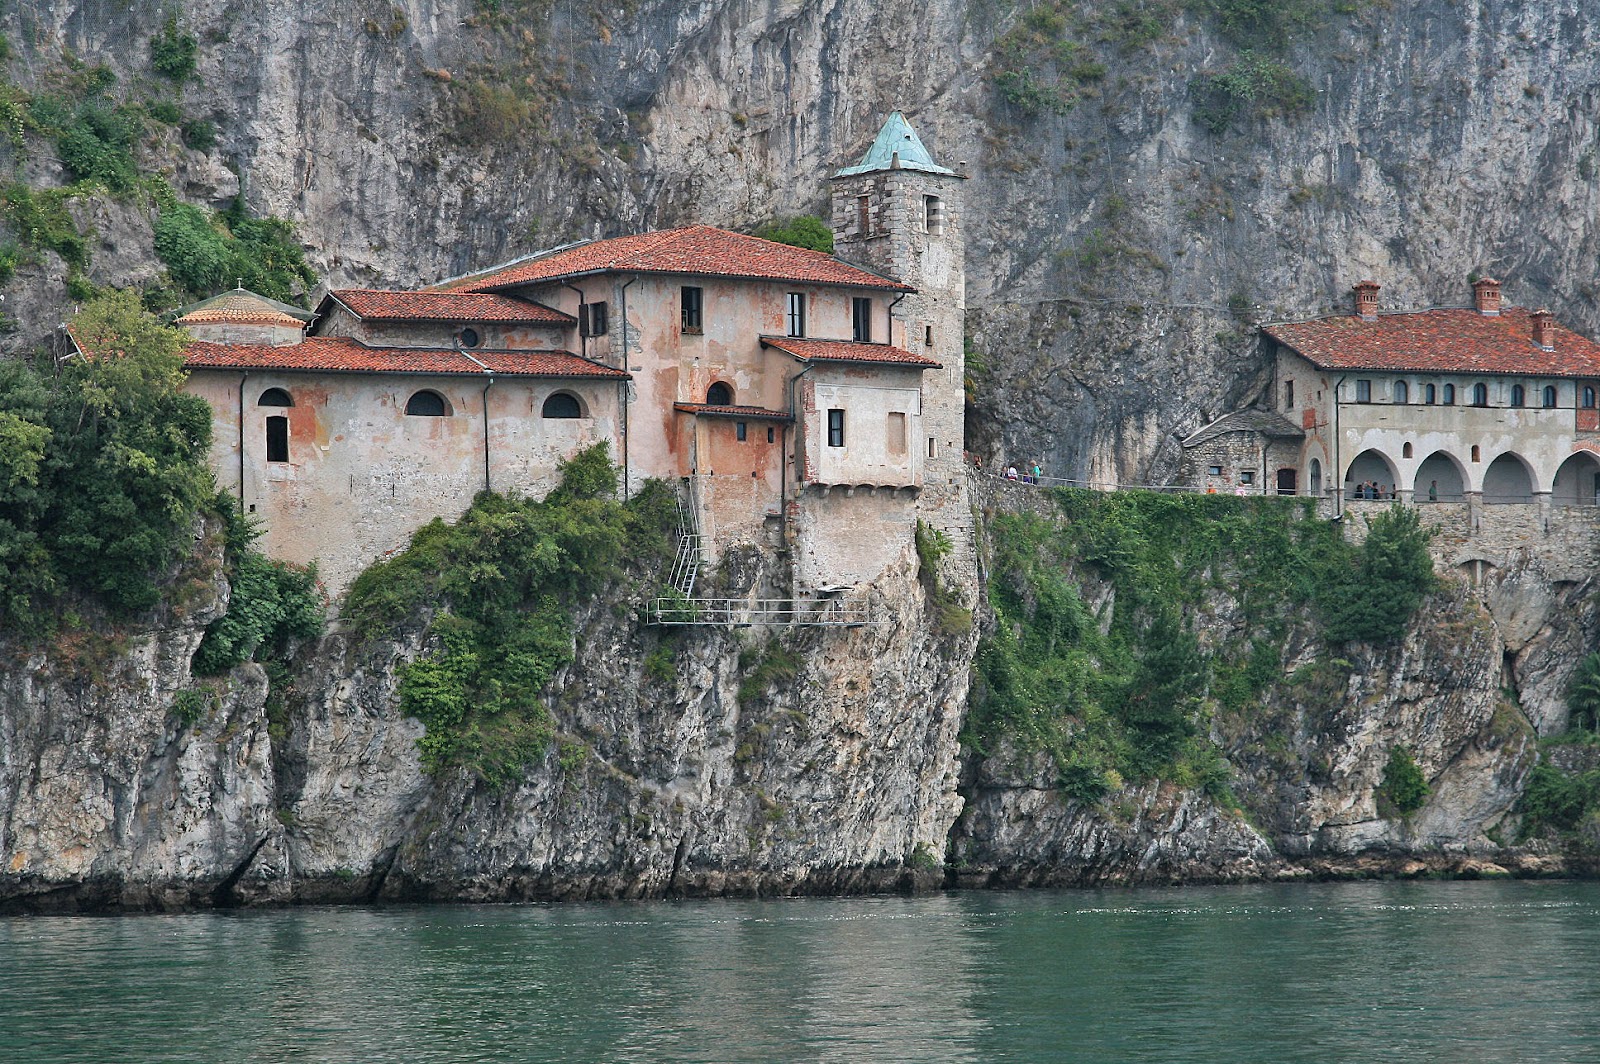 Santa Caterina del Sasso Stresa Lake MaggioreHermitage - Lake Maggiore, Italy